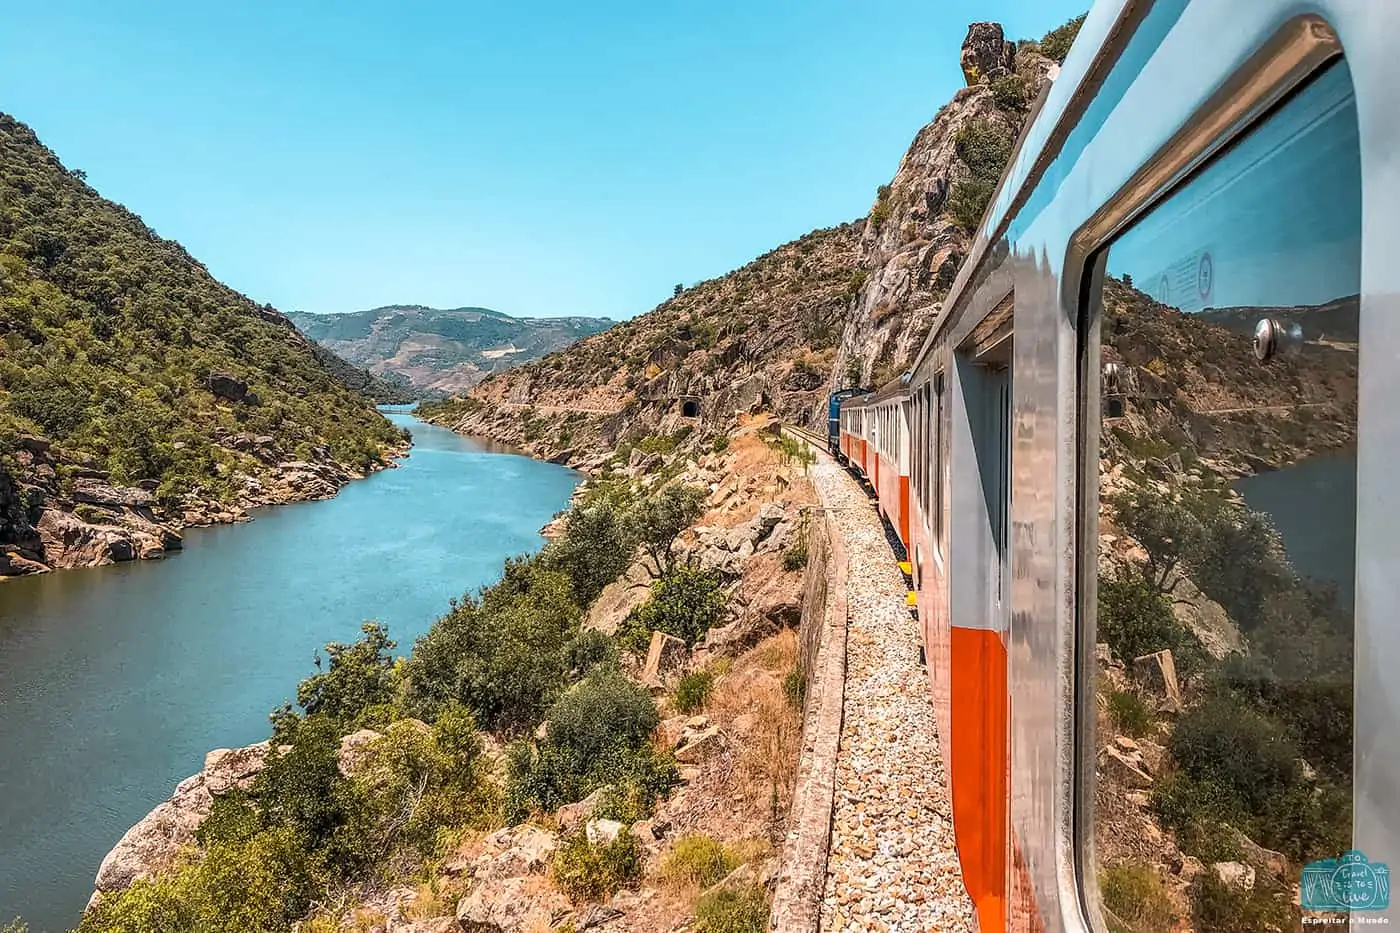 Comboio Douro